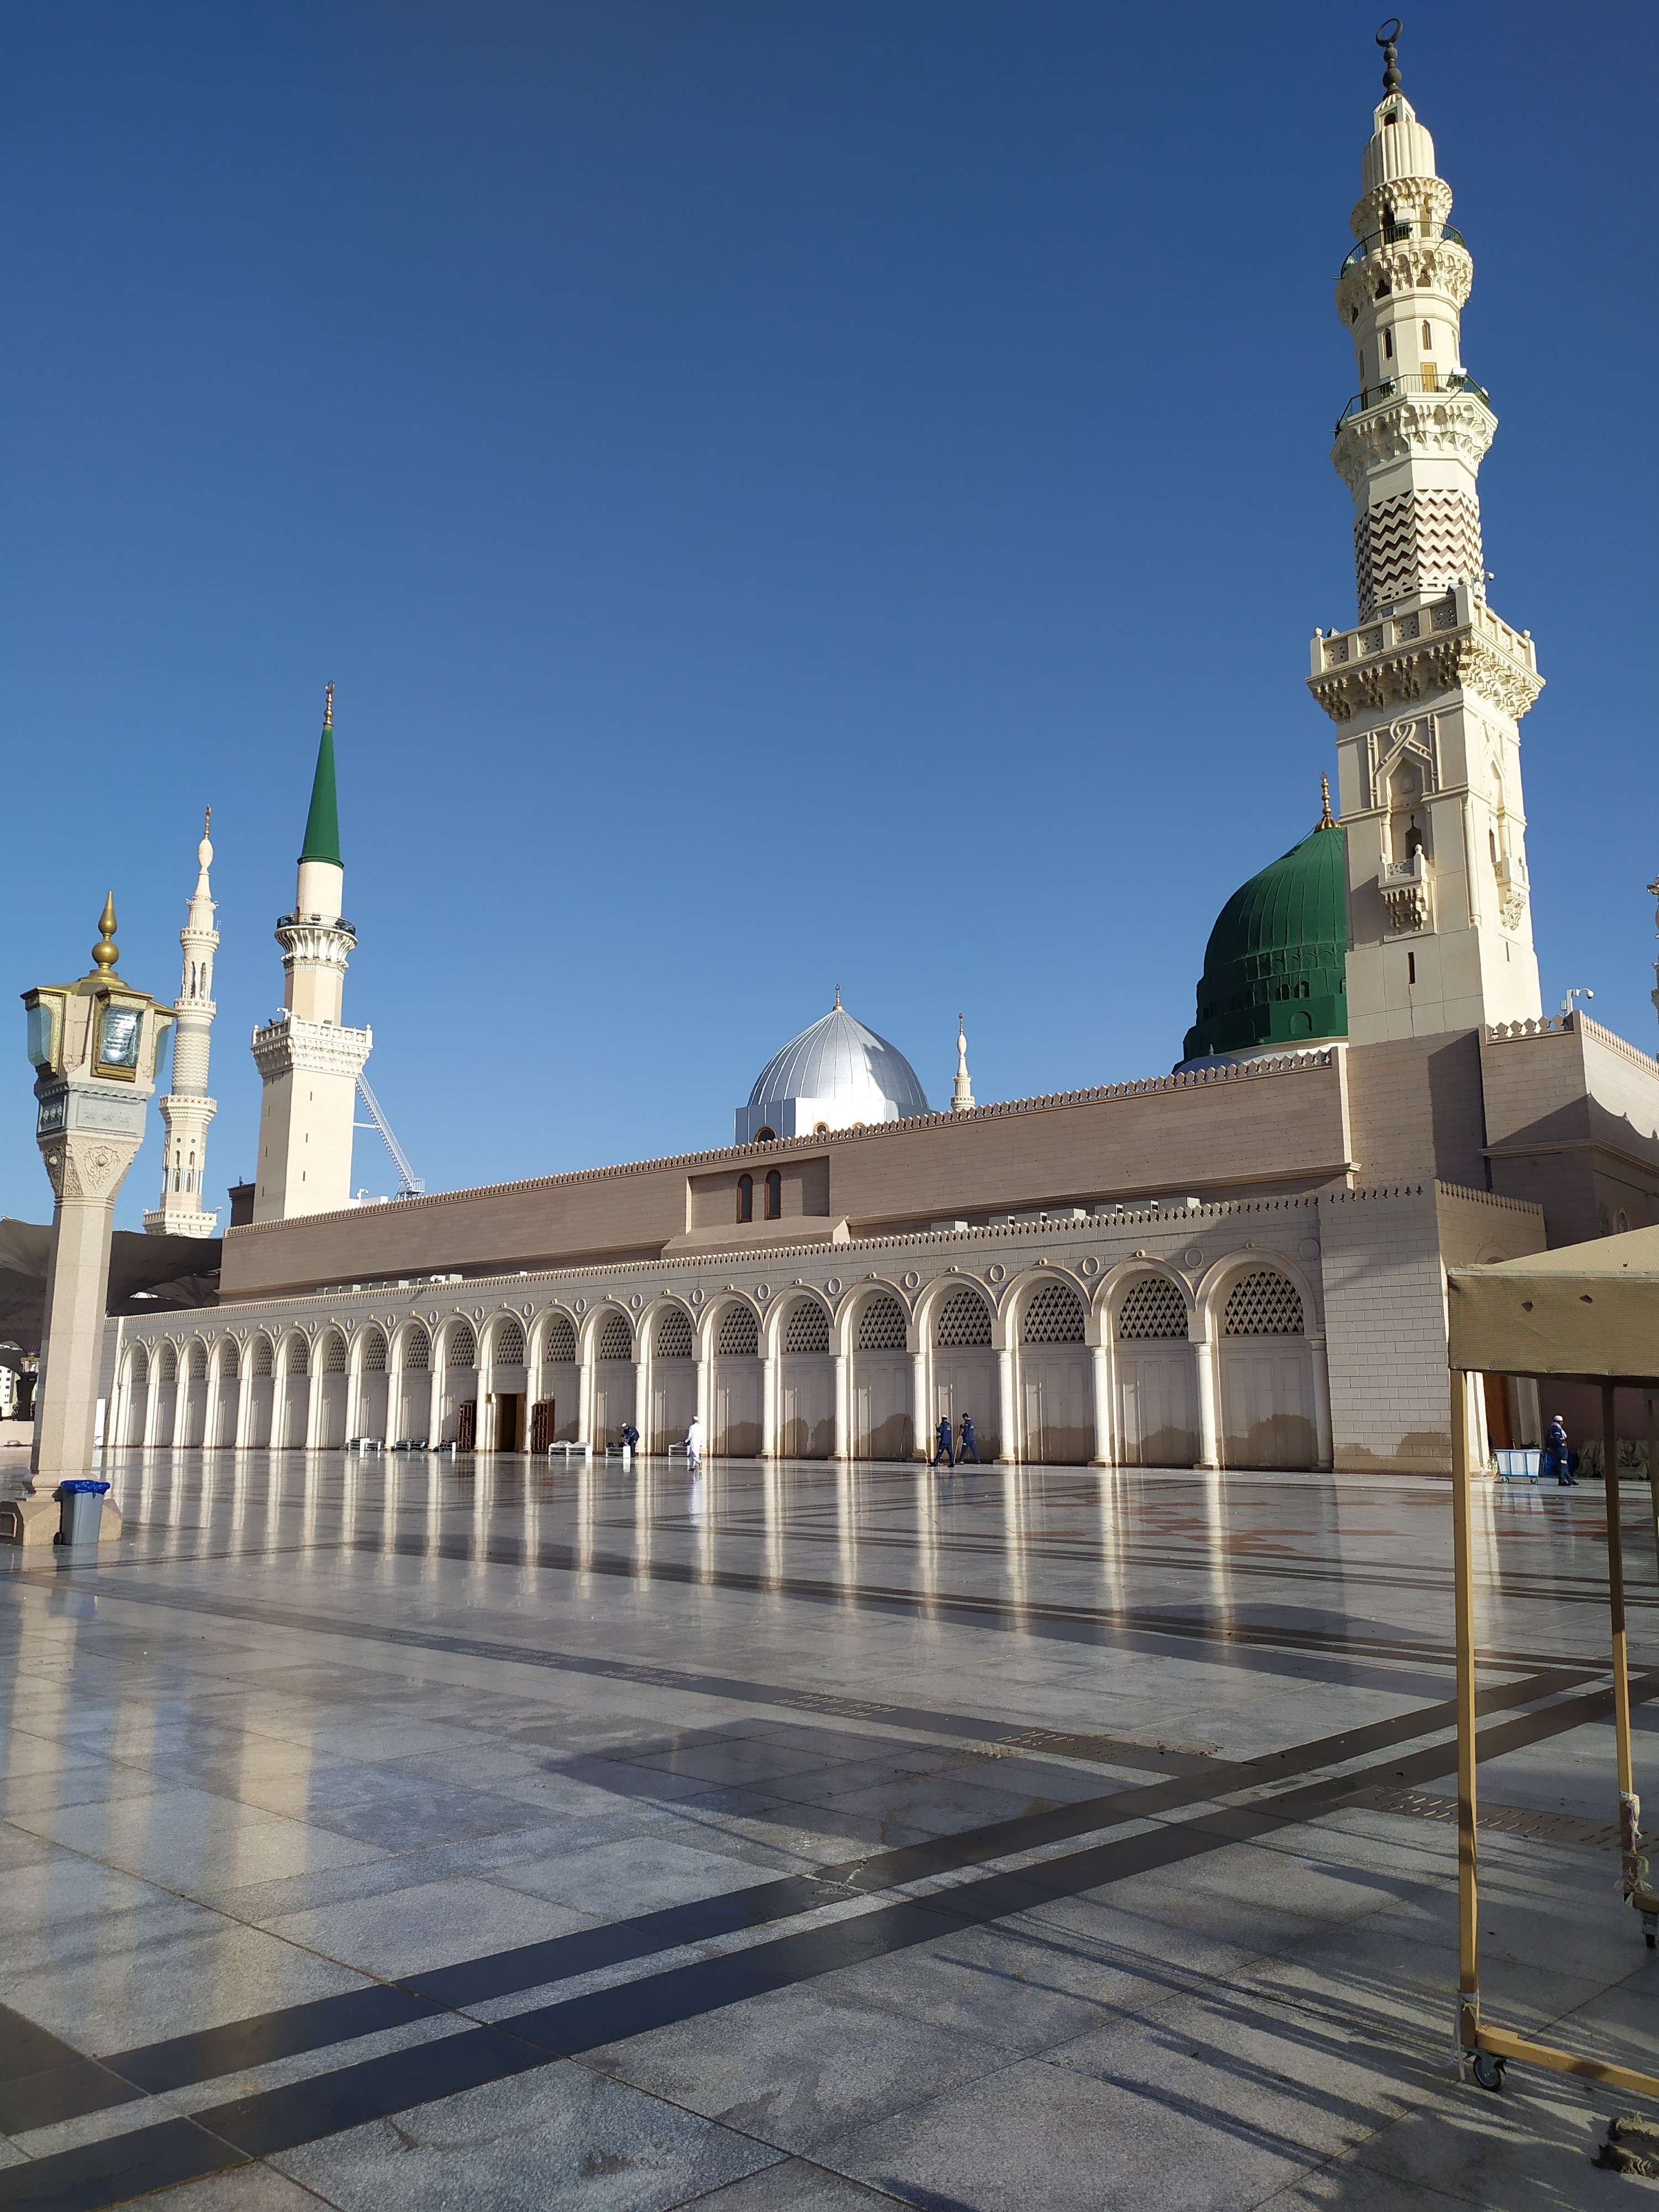 مواقف المسجد النبوي.. أنظمة متطورة وخدمات لتسهيل وصول الزوار